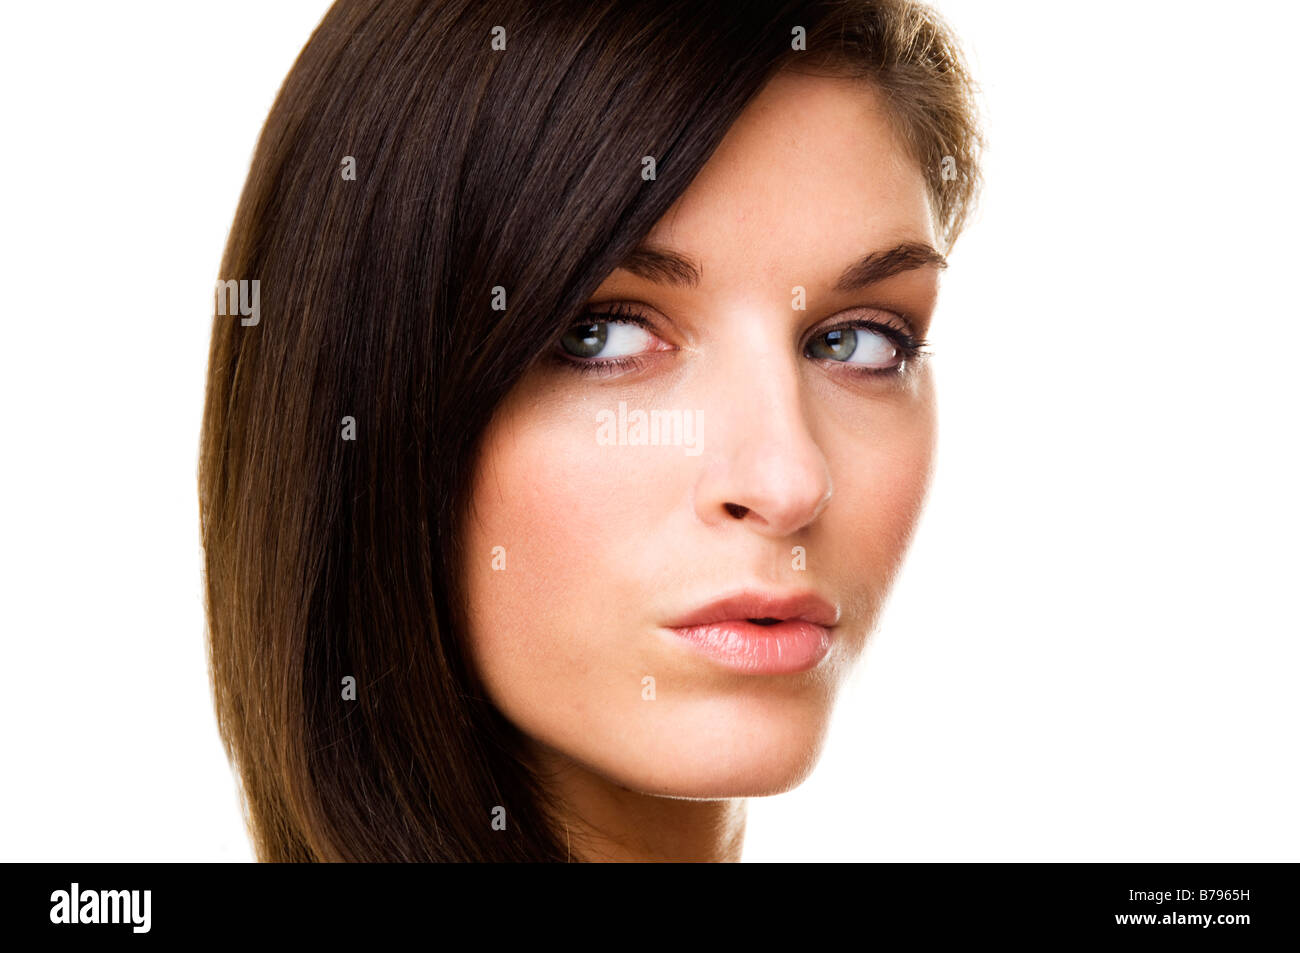 woman face close up Stock Photo